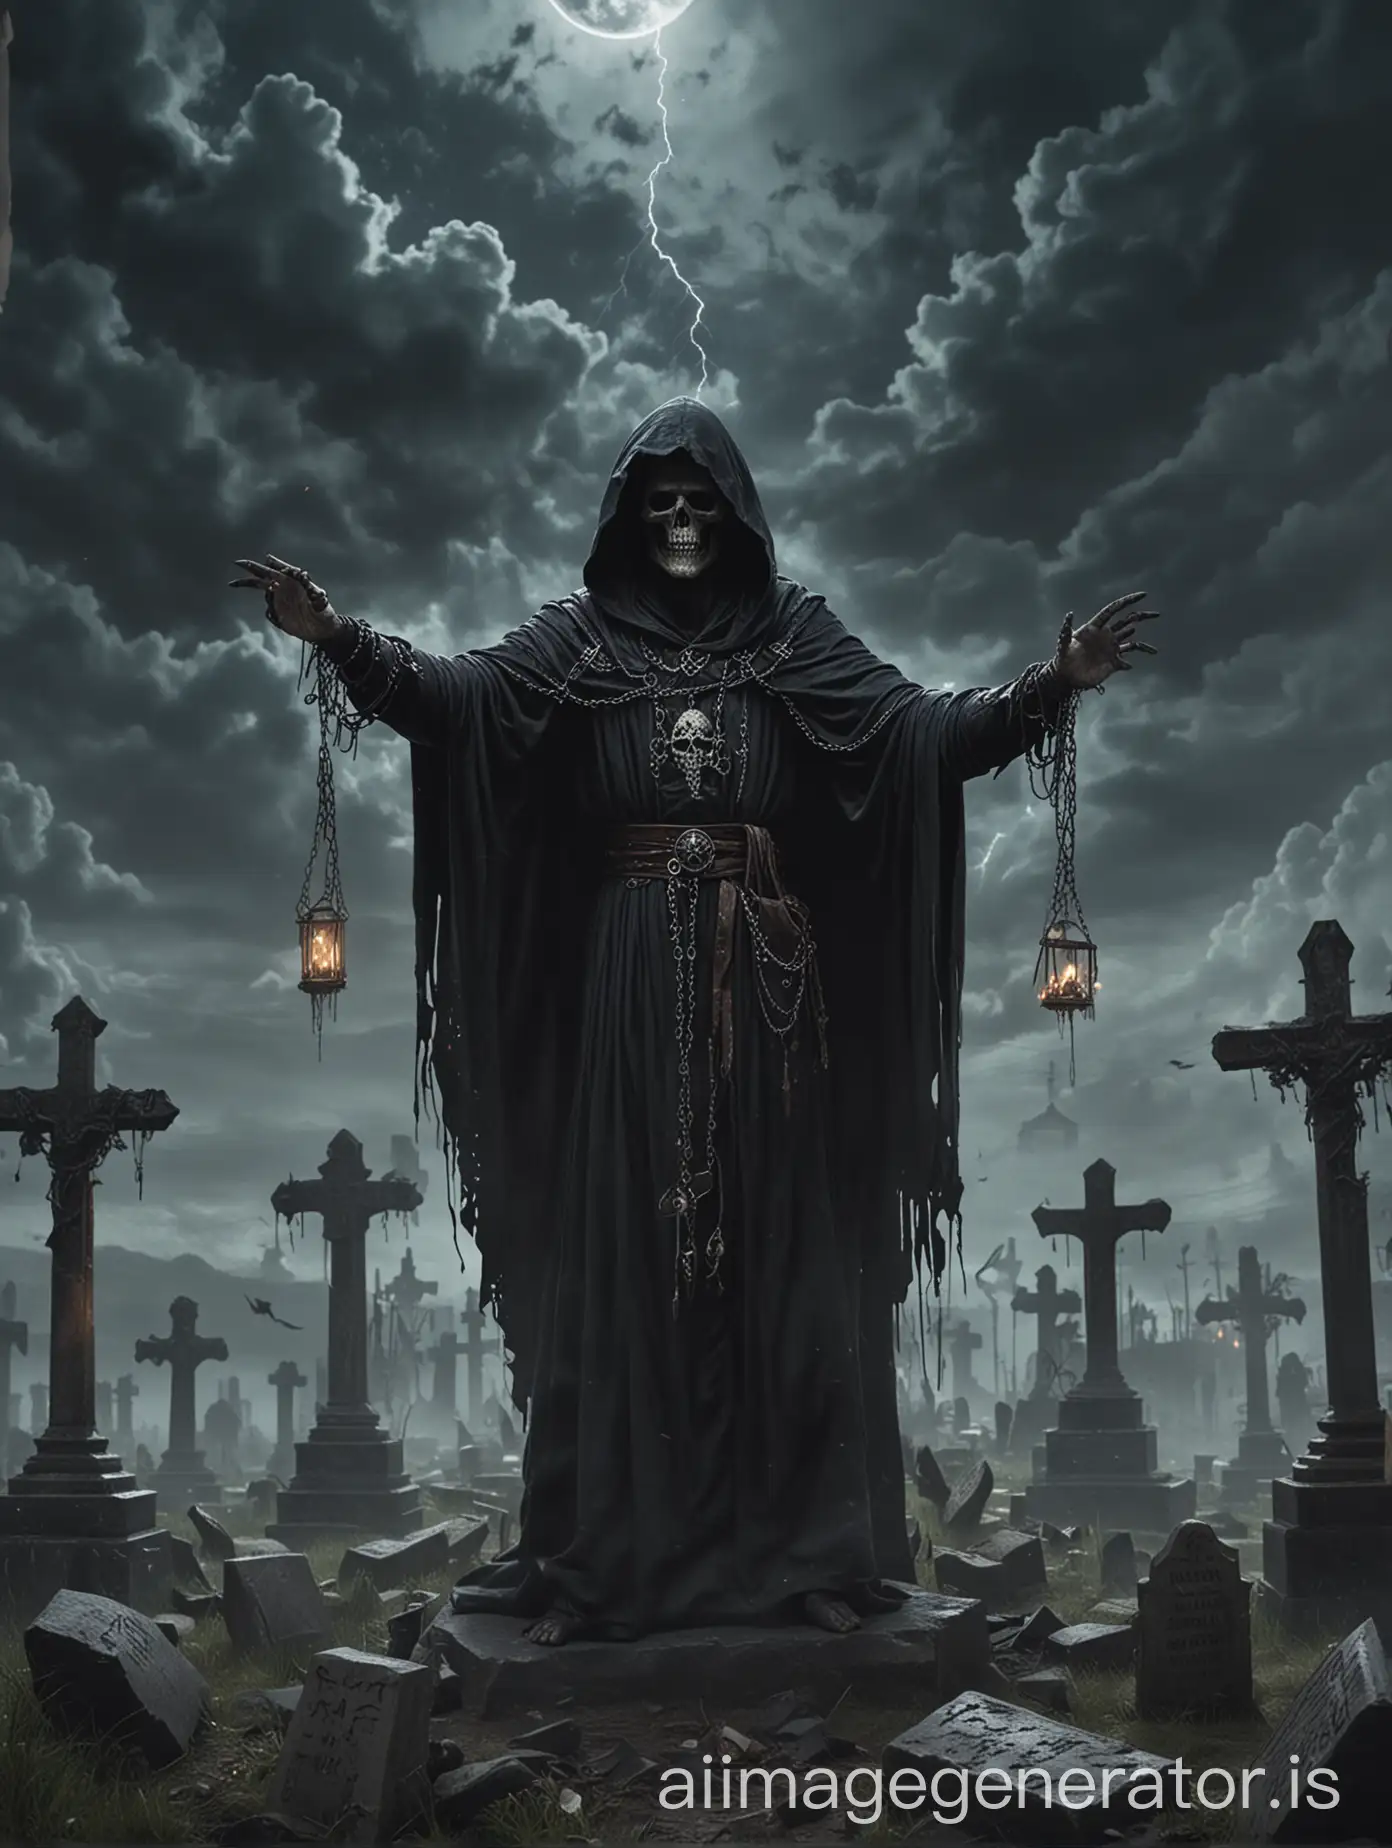 Dark-Necromancer-Summoning-Magic-at-Night-with-Graveyard-Surroundings